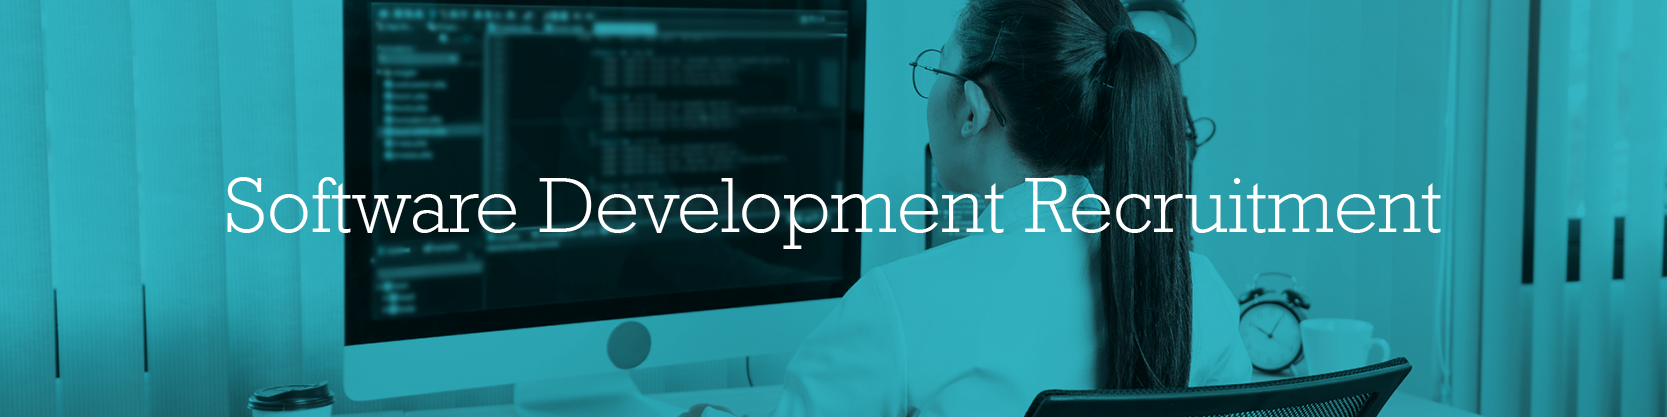 Software Development Recruitment